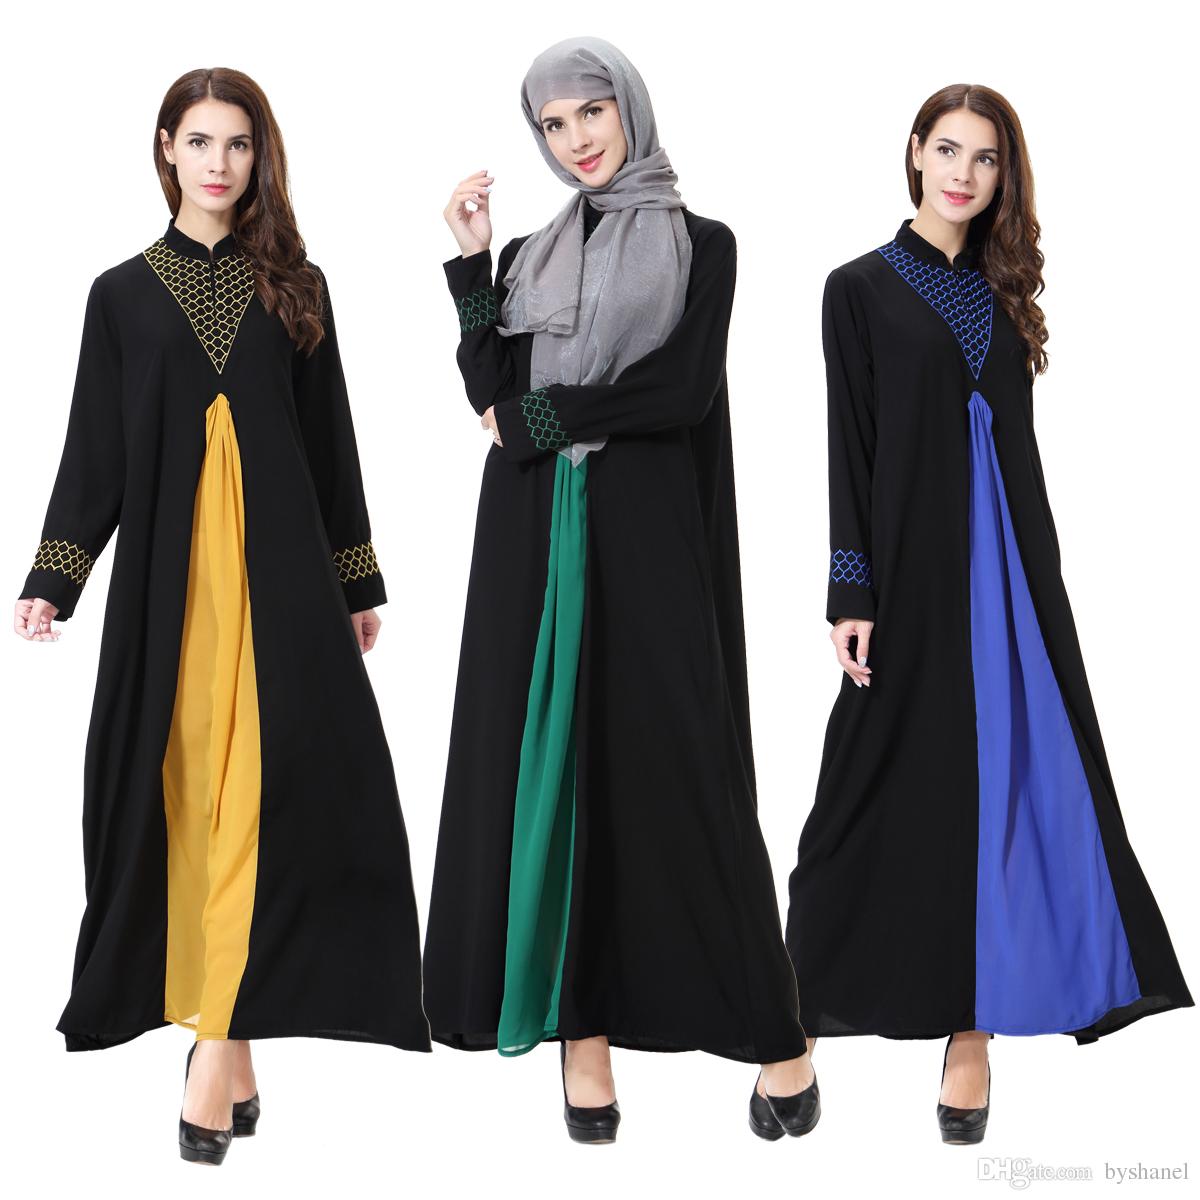 Dubai Women Love To Buy Abaya In Black Color